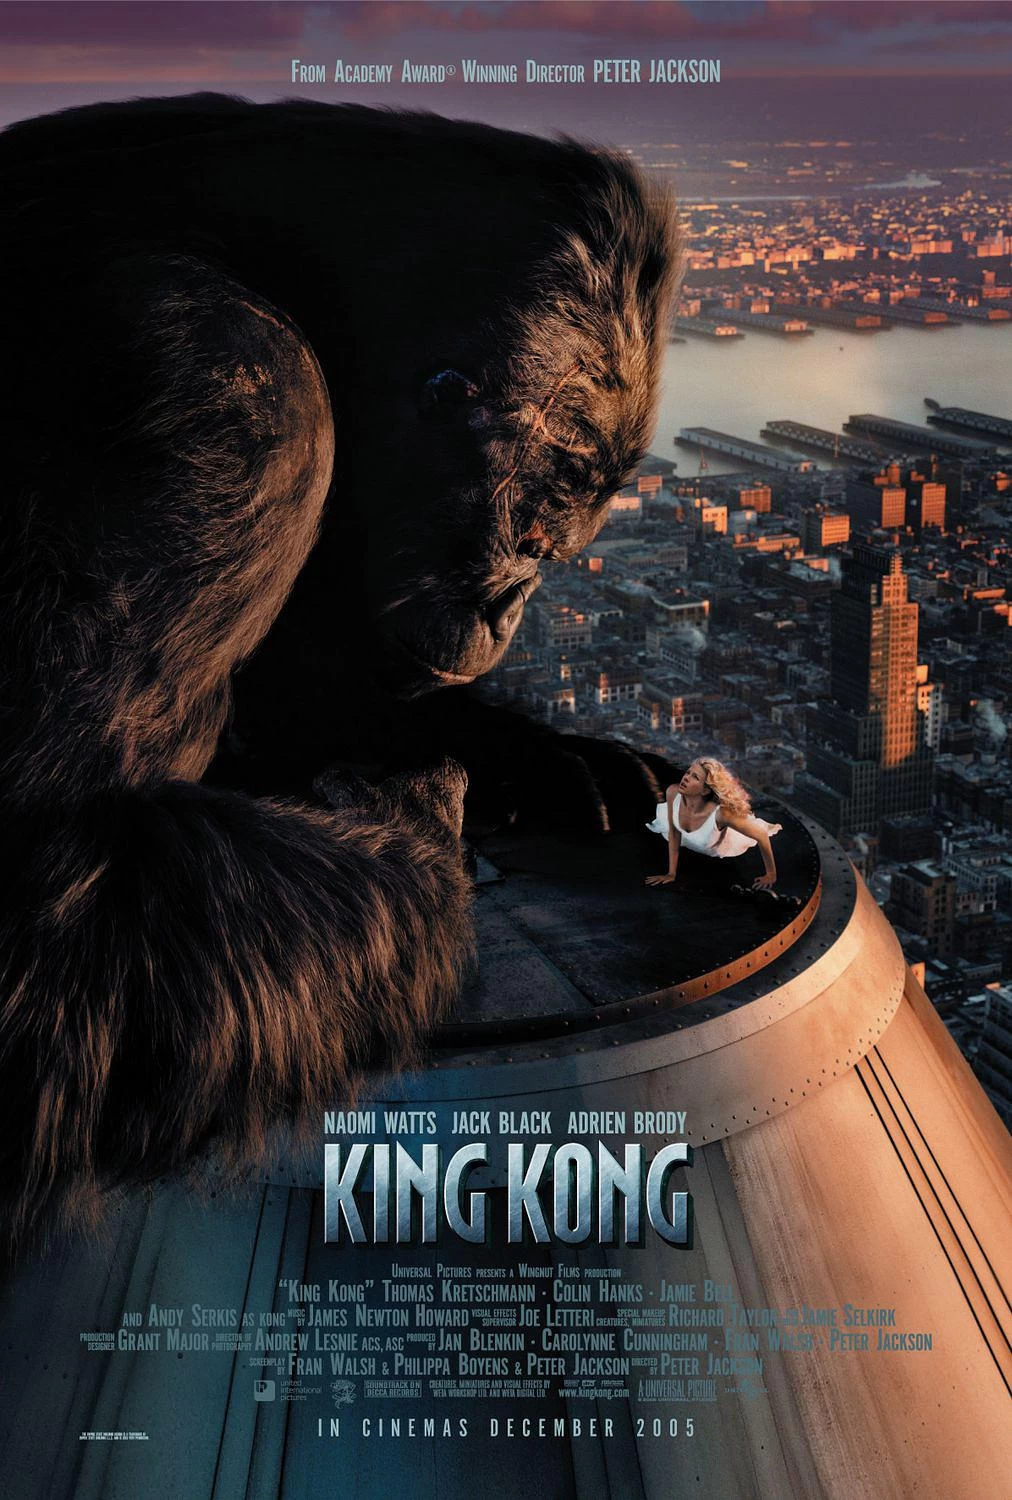 金刚 4K蓝光原盘下载+高清MKV版 /King Kong: The Eighth Wonder of the World 2005 King Kong  79.9G